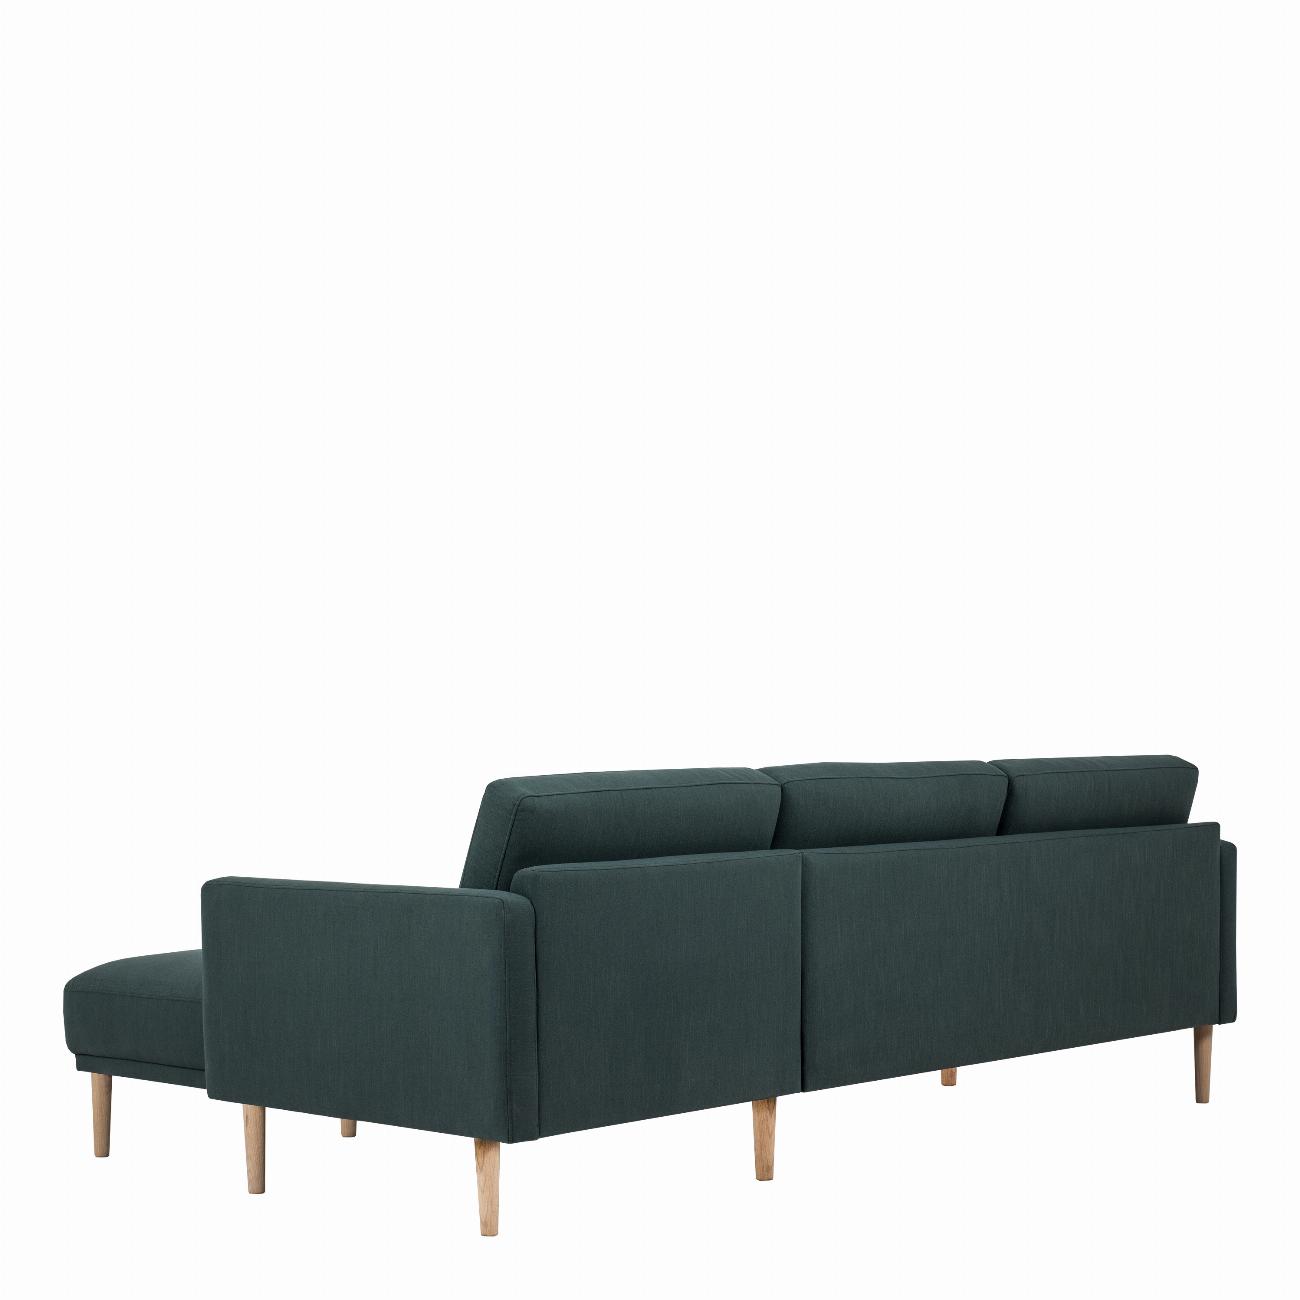 Larvik Chaiselongue Sofa (RH) - Dark Green, Oak Legs